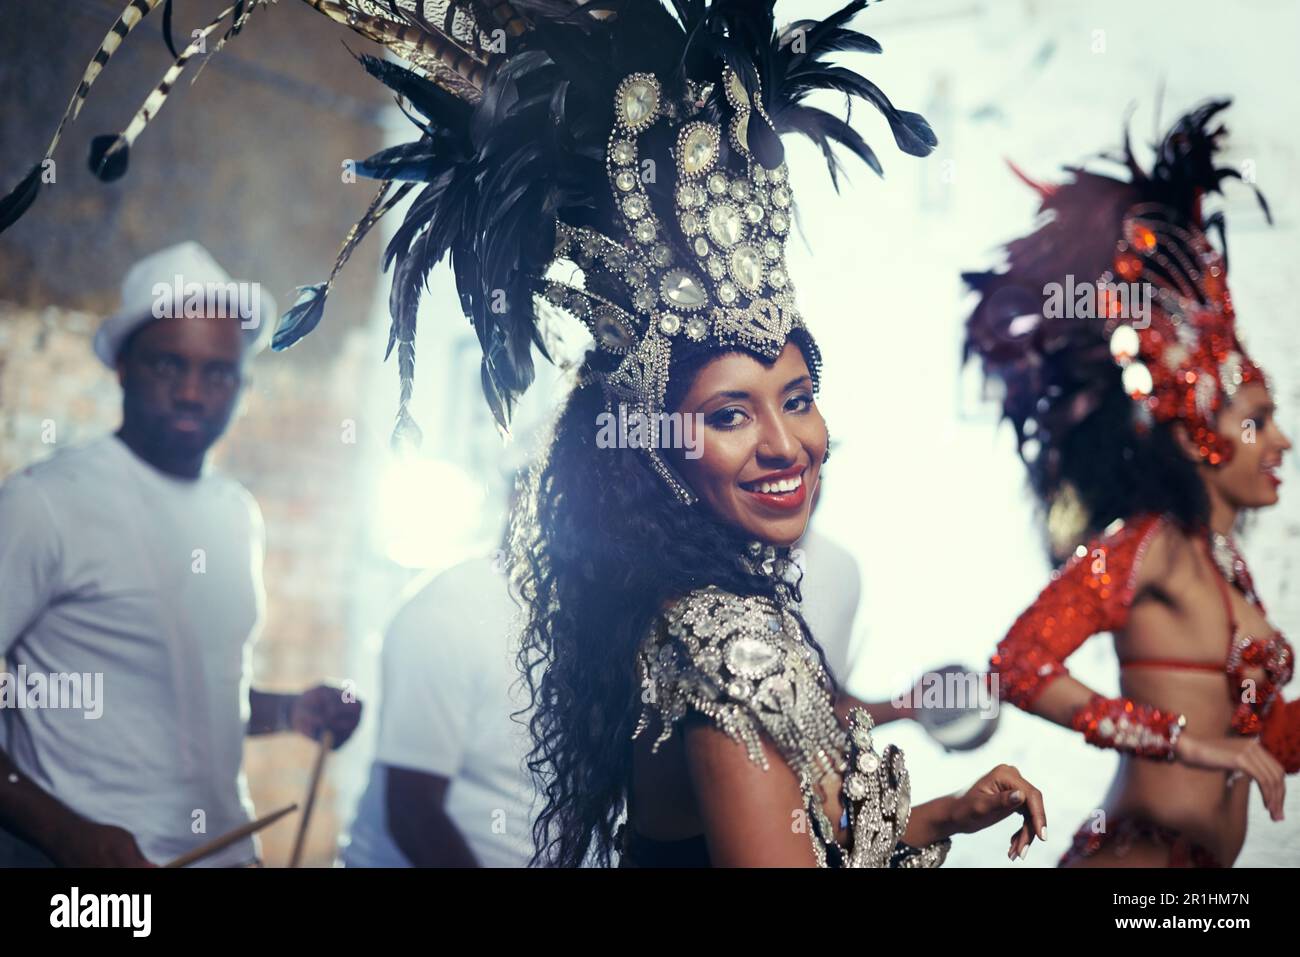 Portrait de festival, danseuse de carnaval et femme sourient avec de la musique et fête au Brésil. Mardi gras, danse et costume d'événement culturel avec Banque D'Images